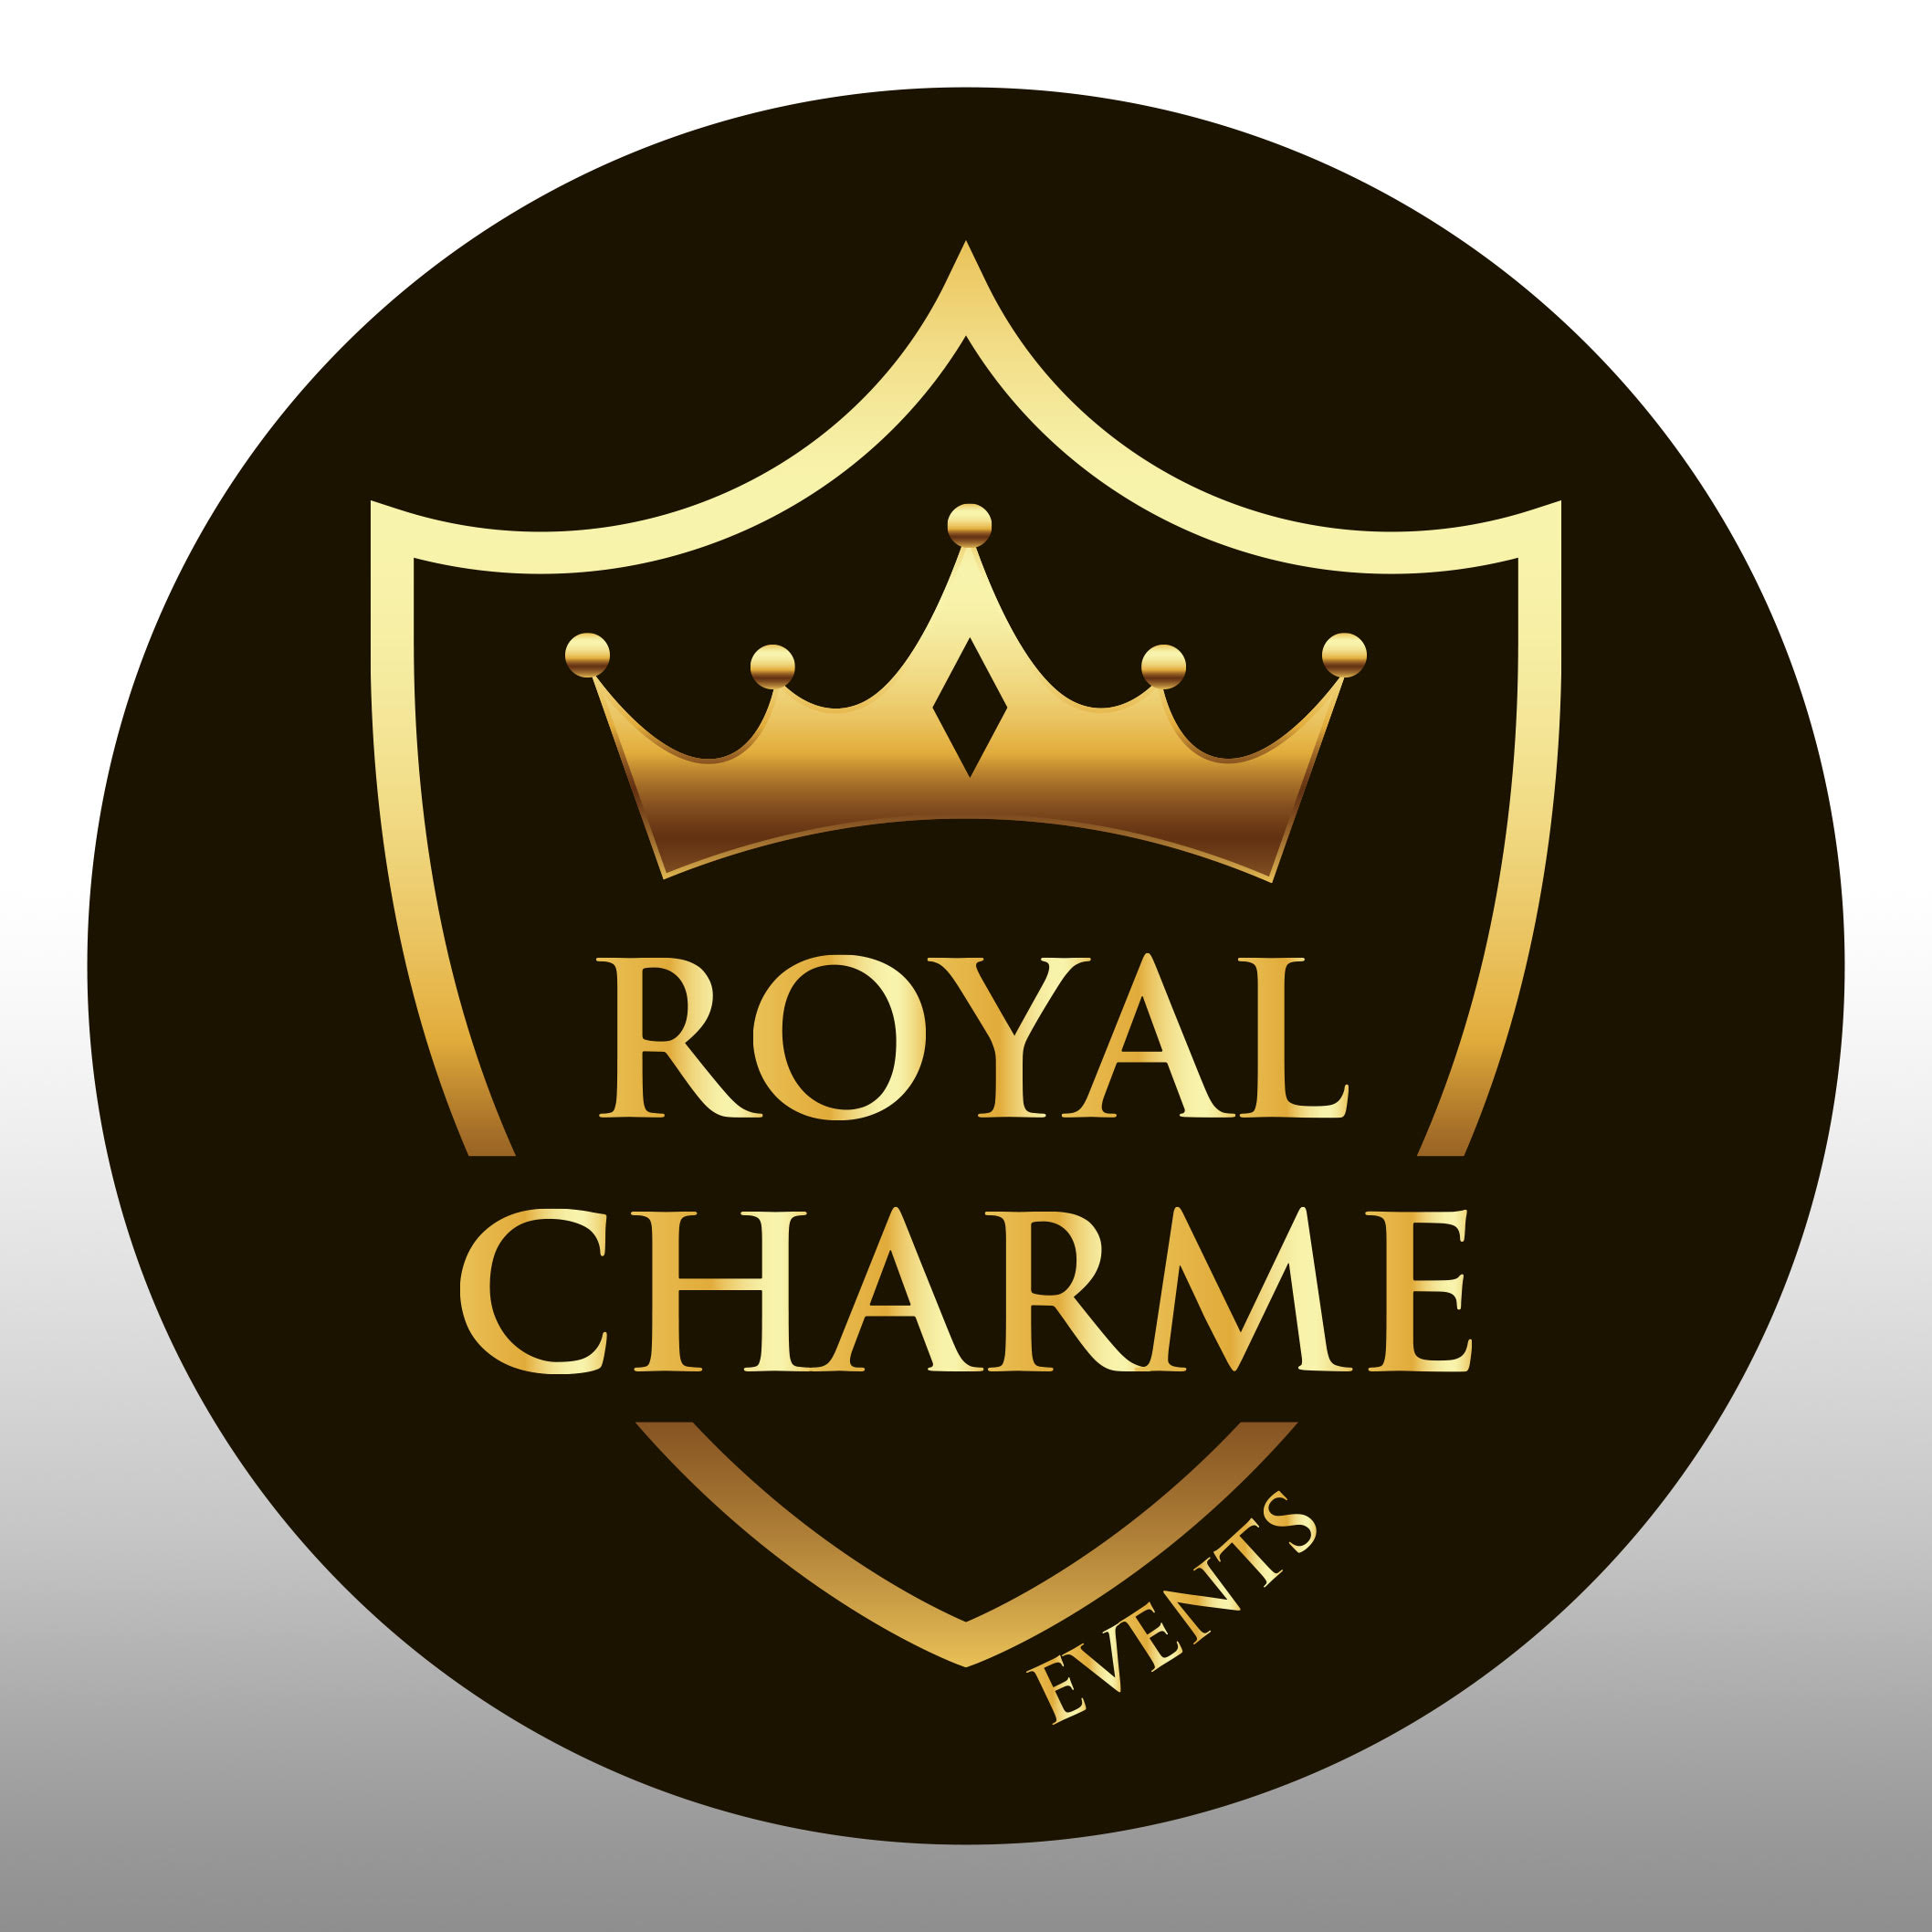 Royal Charme